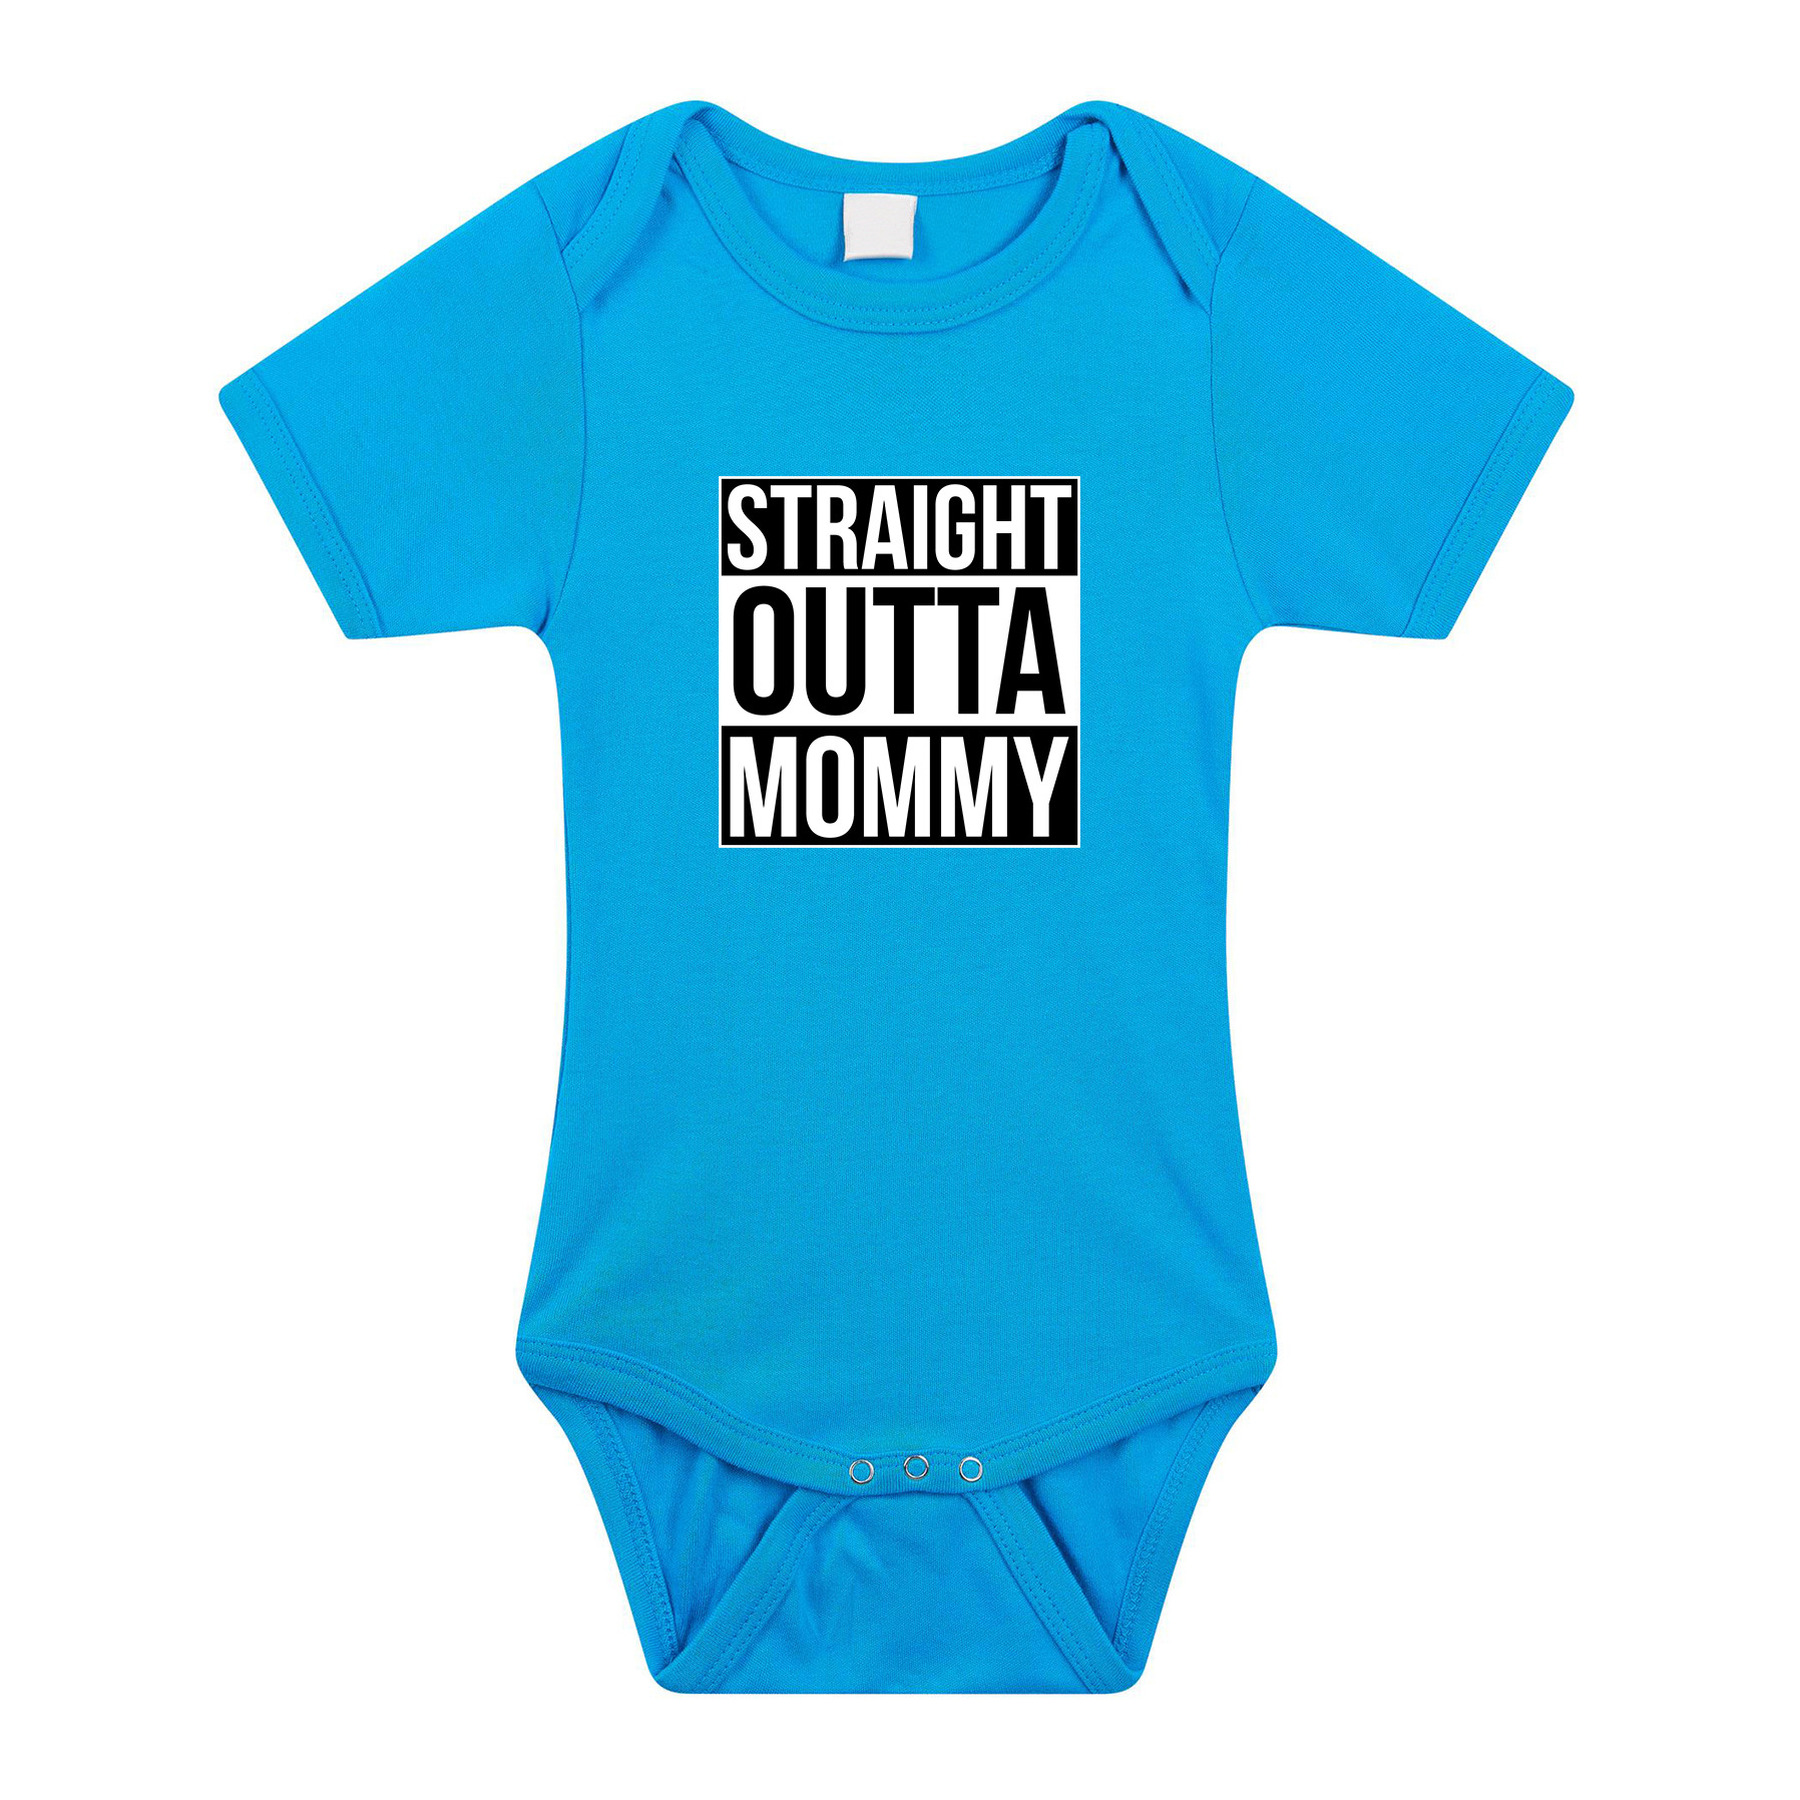 Straight outta mommy geboorte cadeau-kraamcadeau romper blauw voor babys-jongens